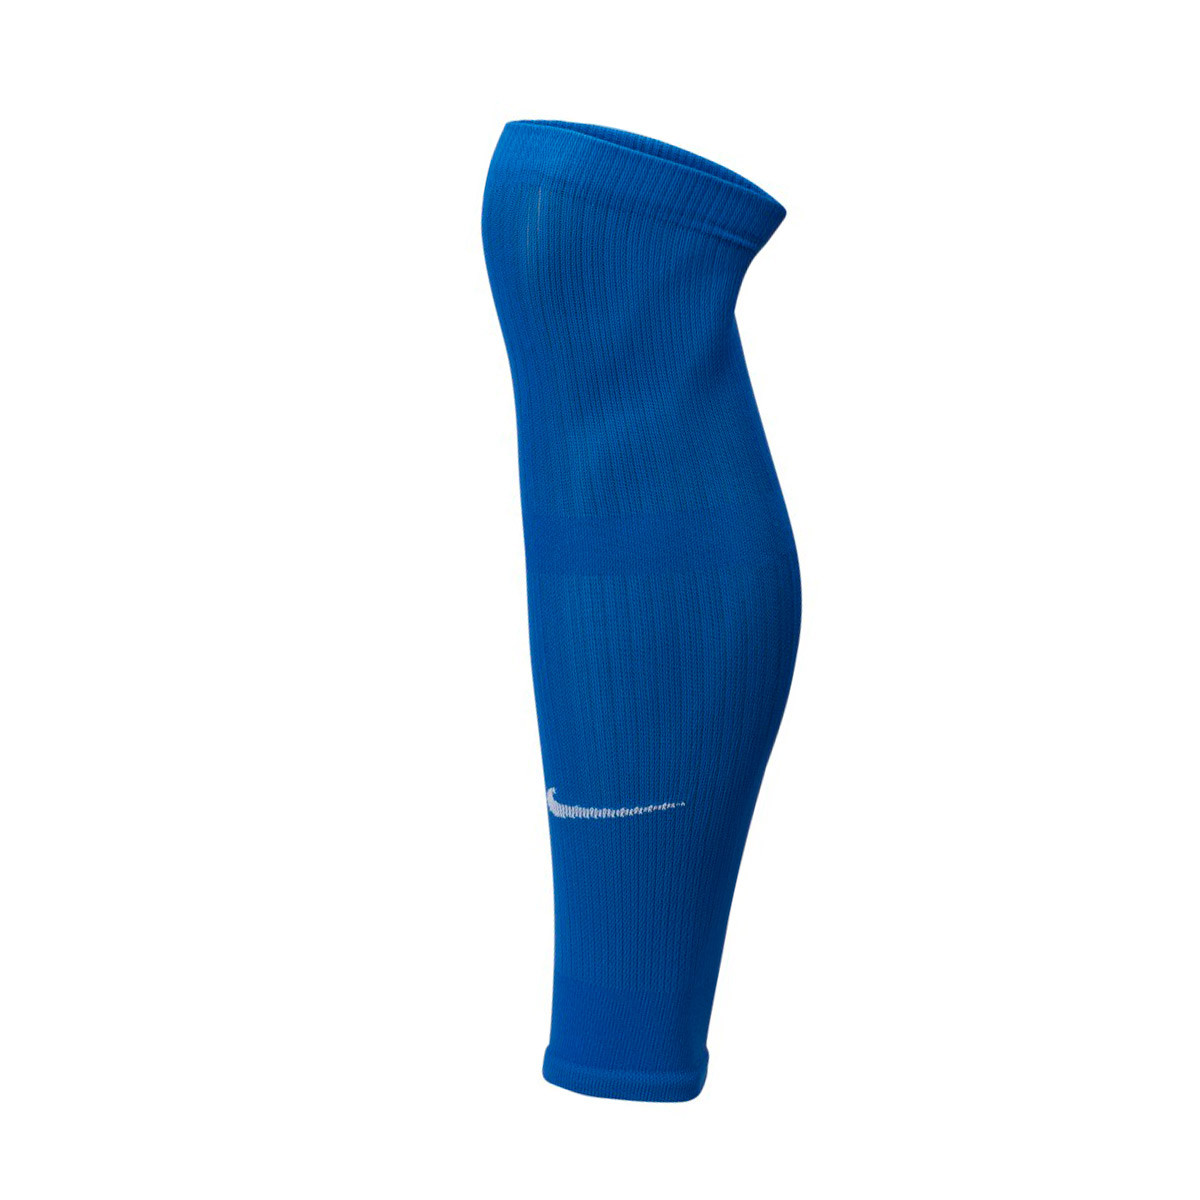 blue nike football socks